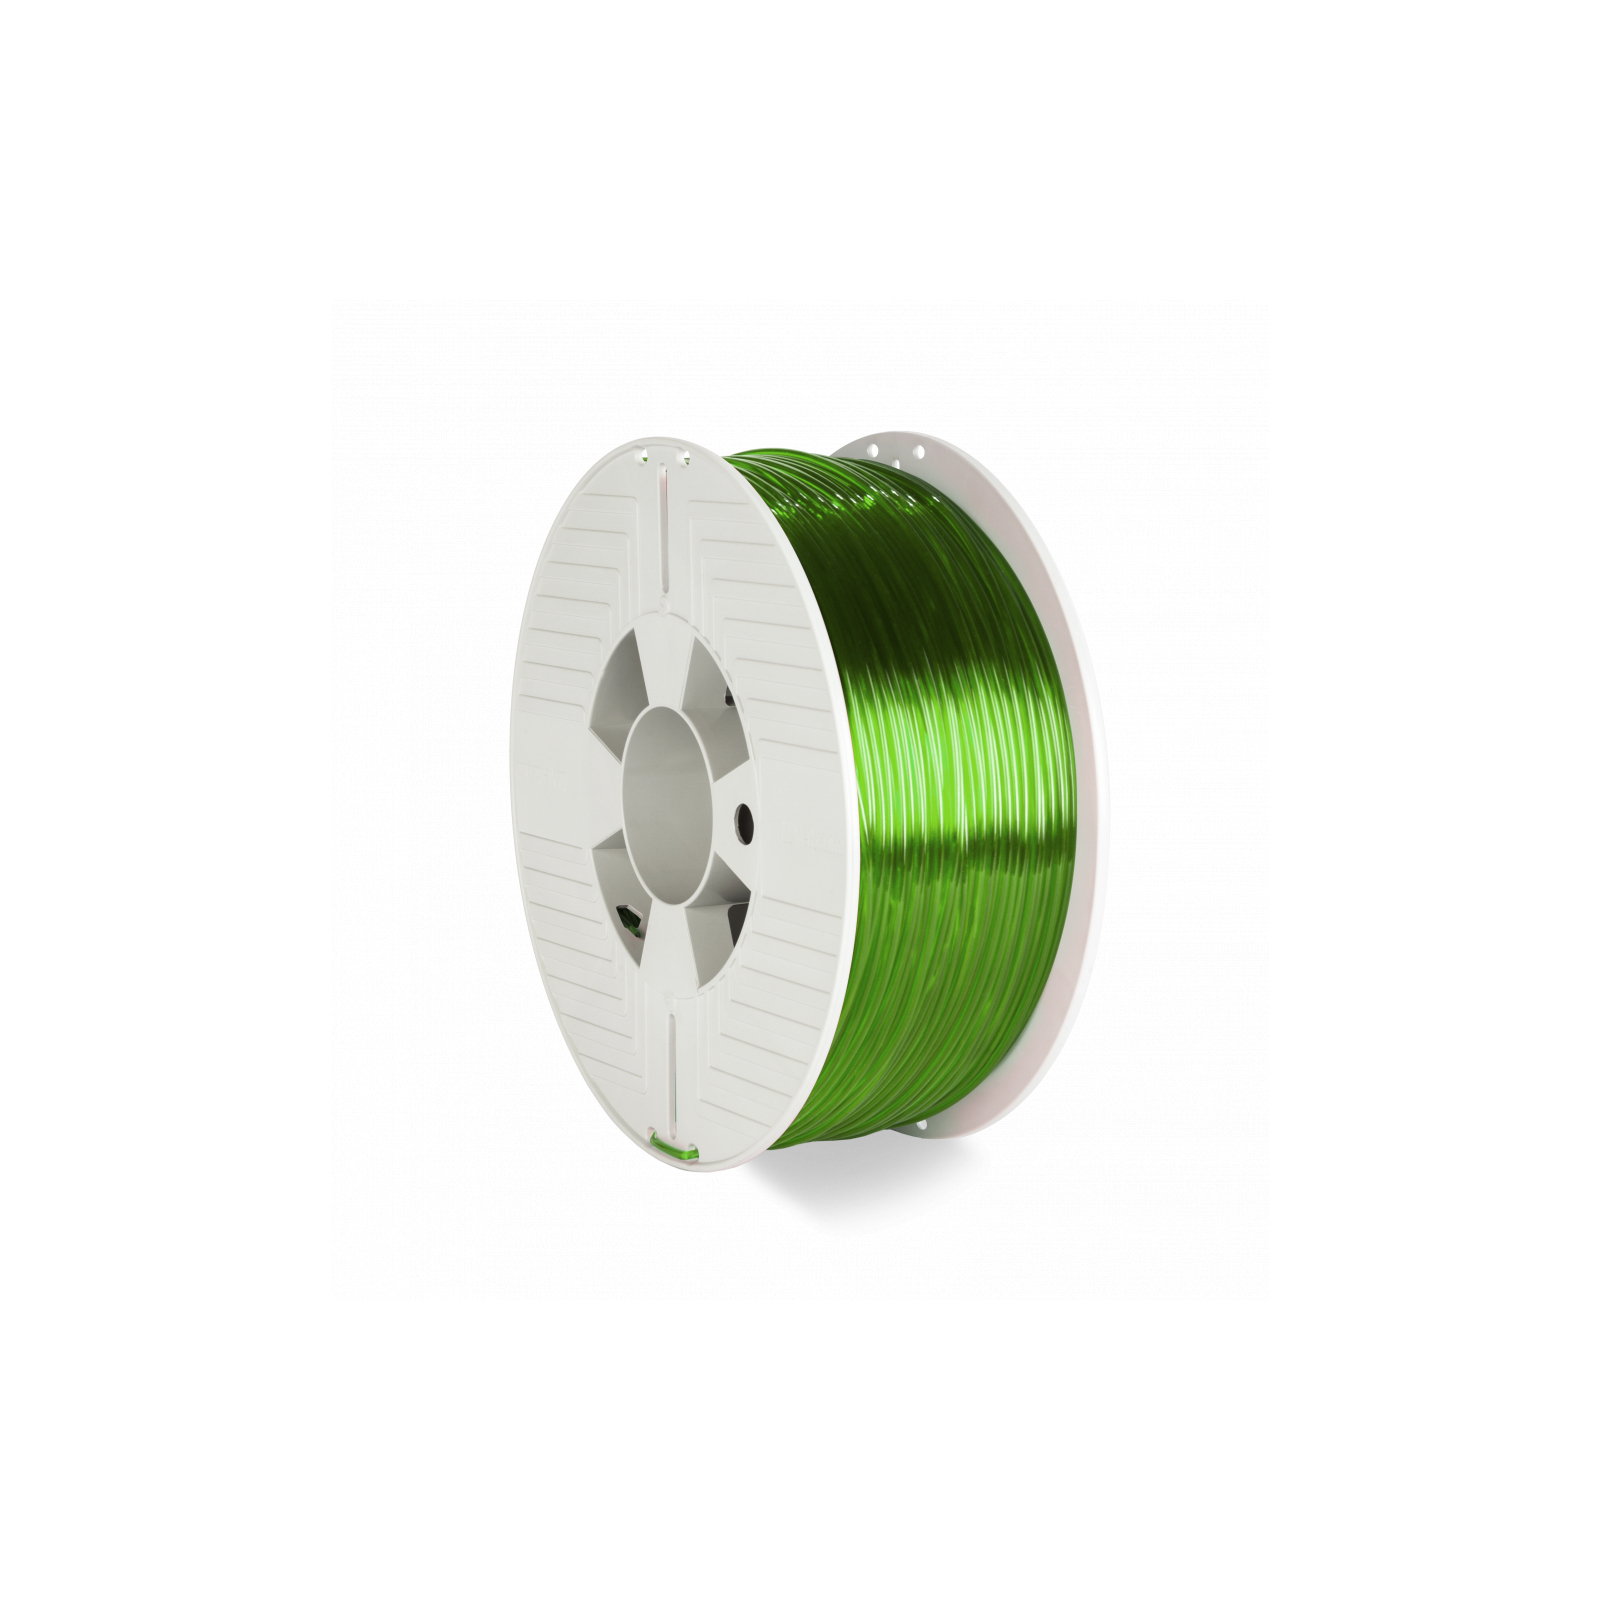 Пластик для 3D-принтера Verbatim PETG, 2,85 мм, 1 кг, green-transparent (55065)